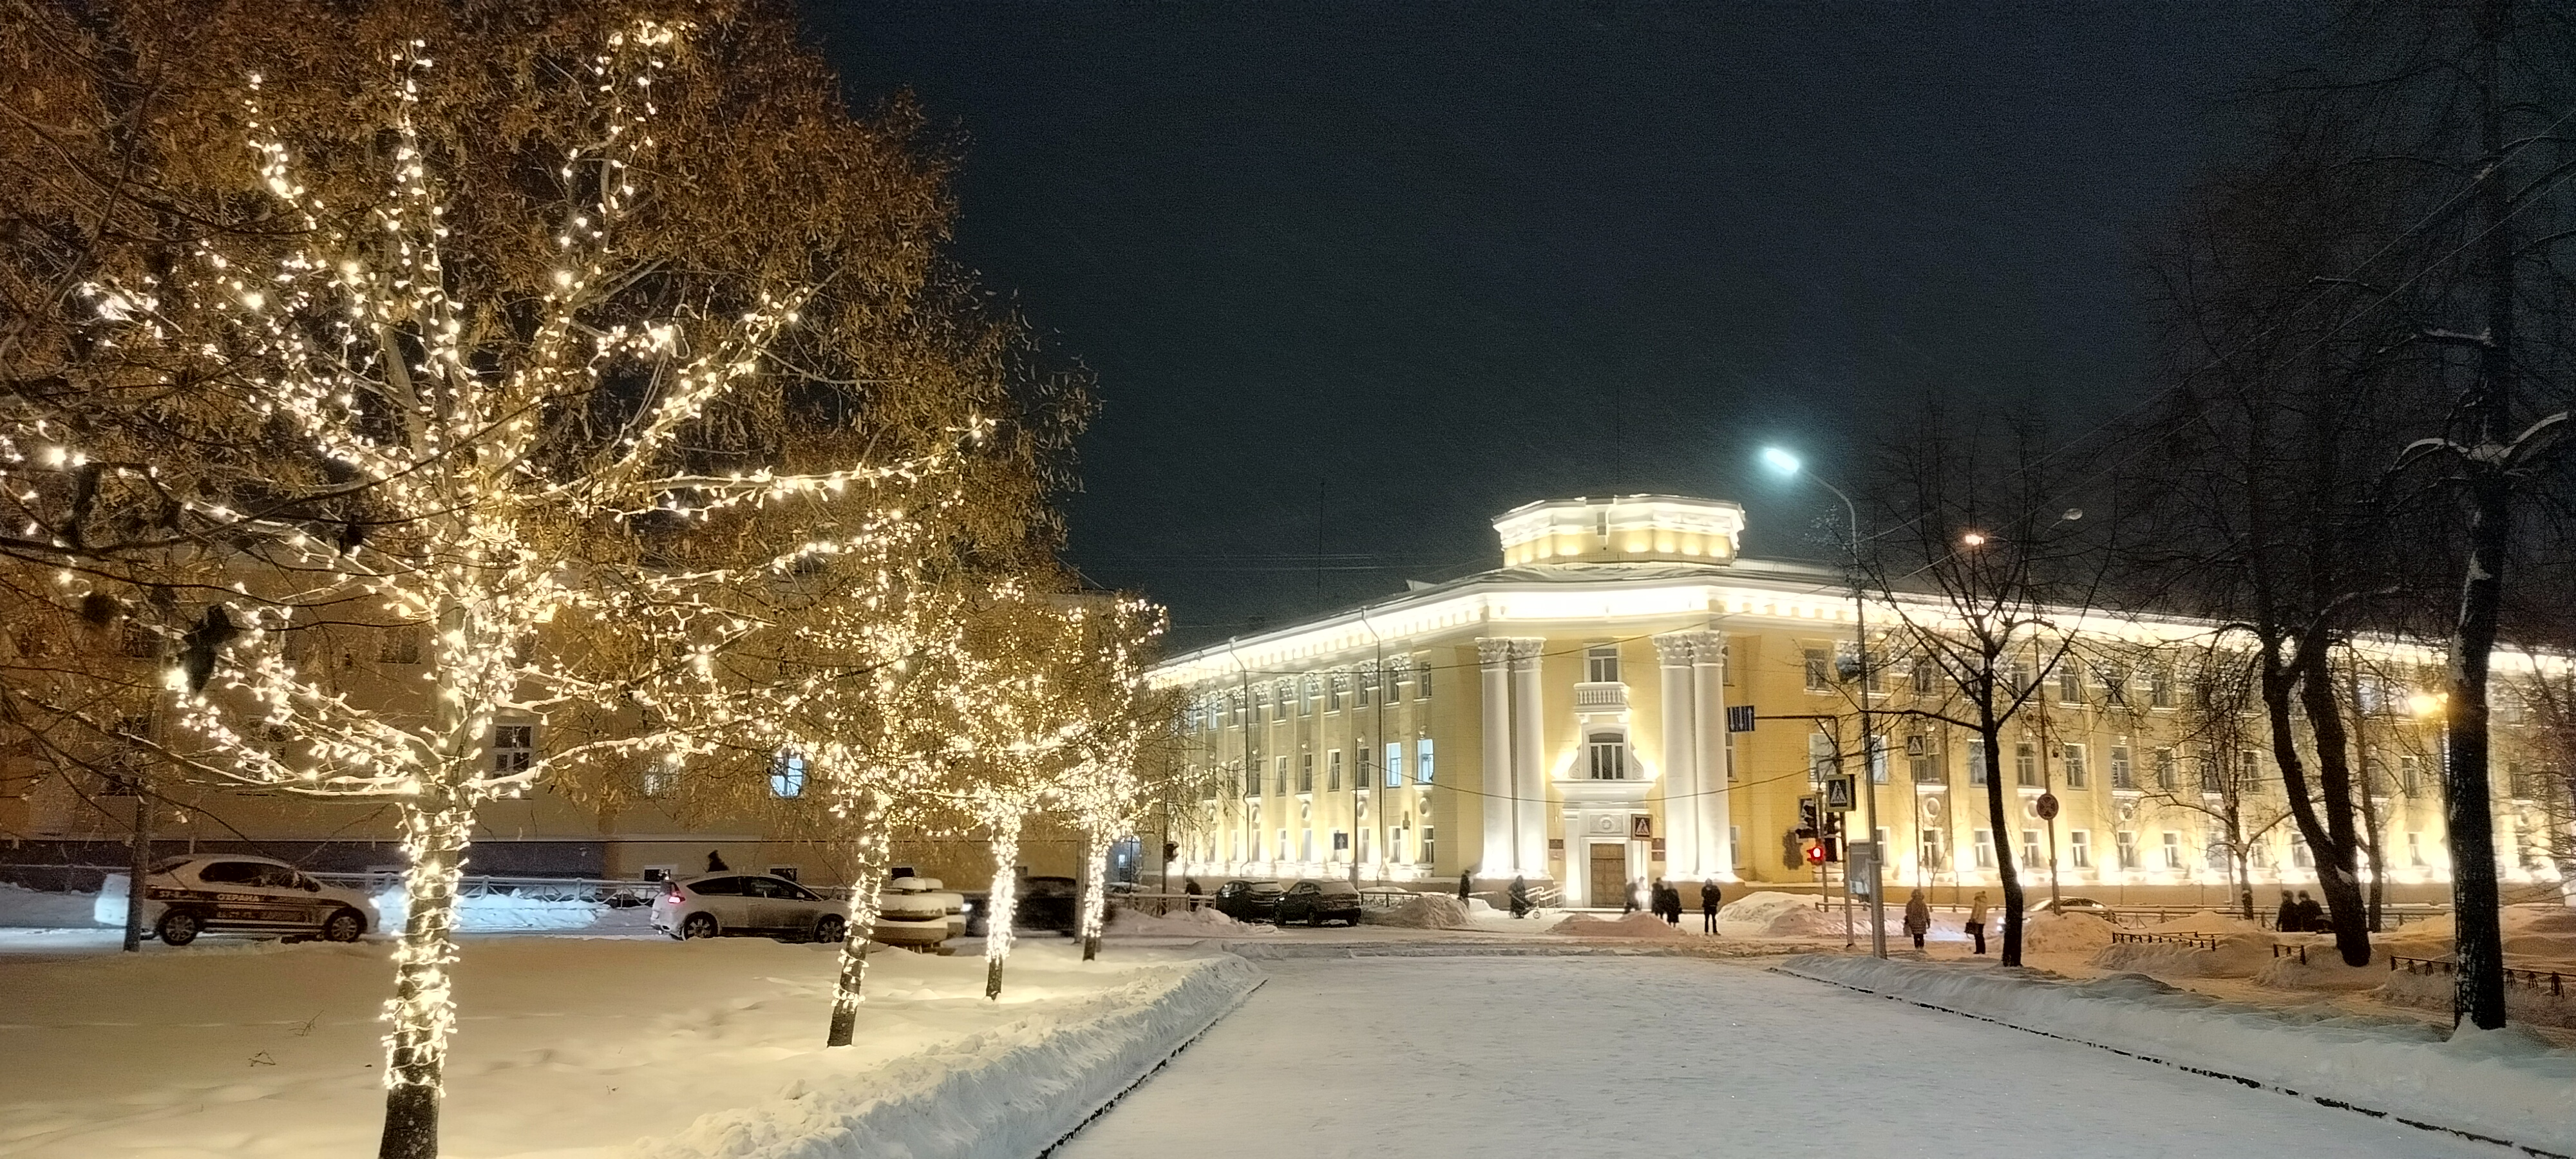 Карелия оказалась в числе самых недорогих направлений для туристов в феврале